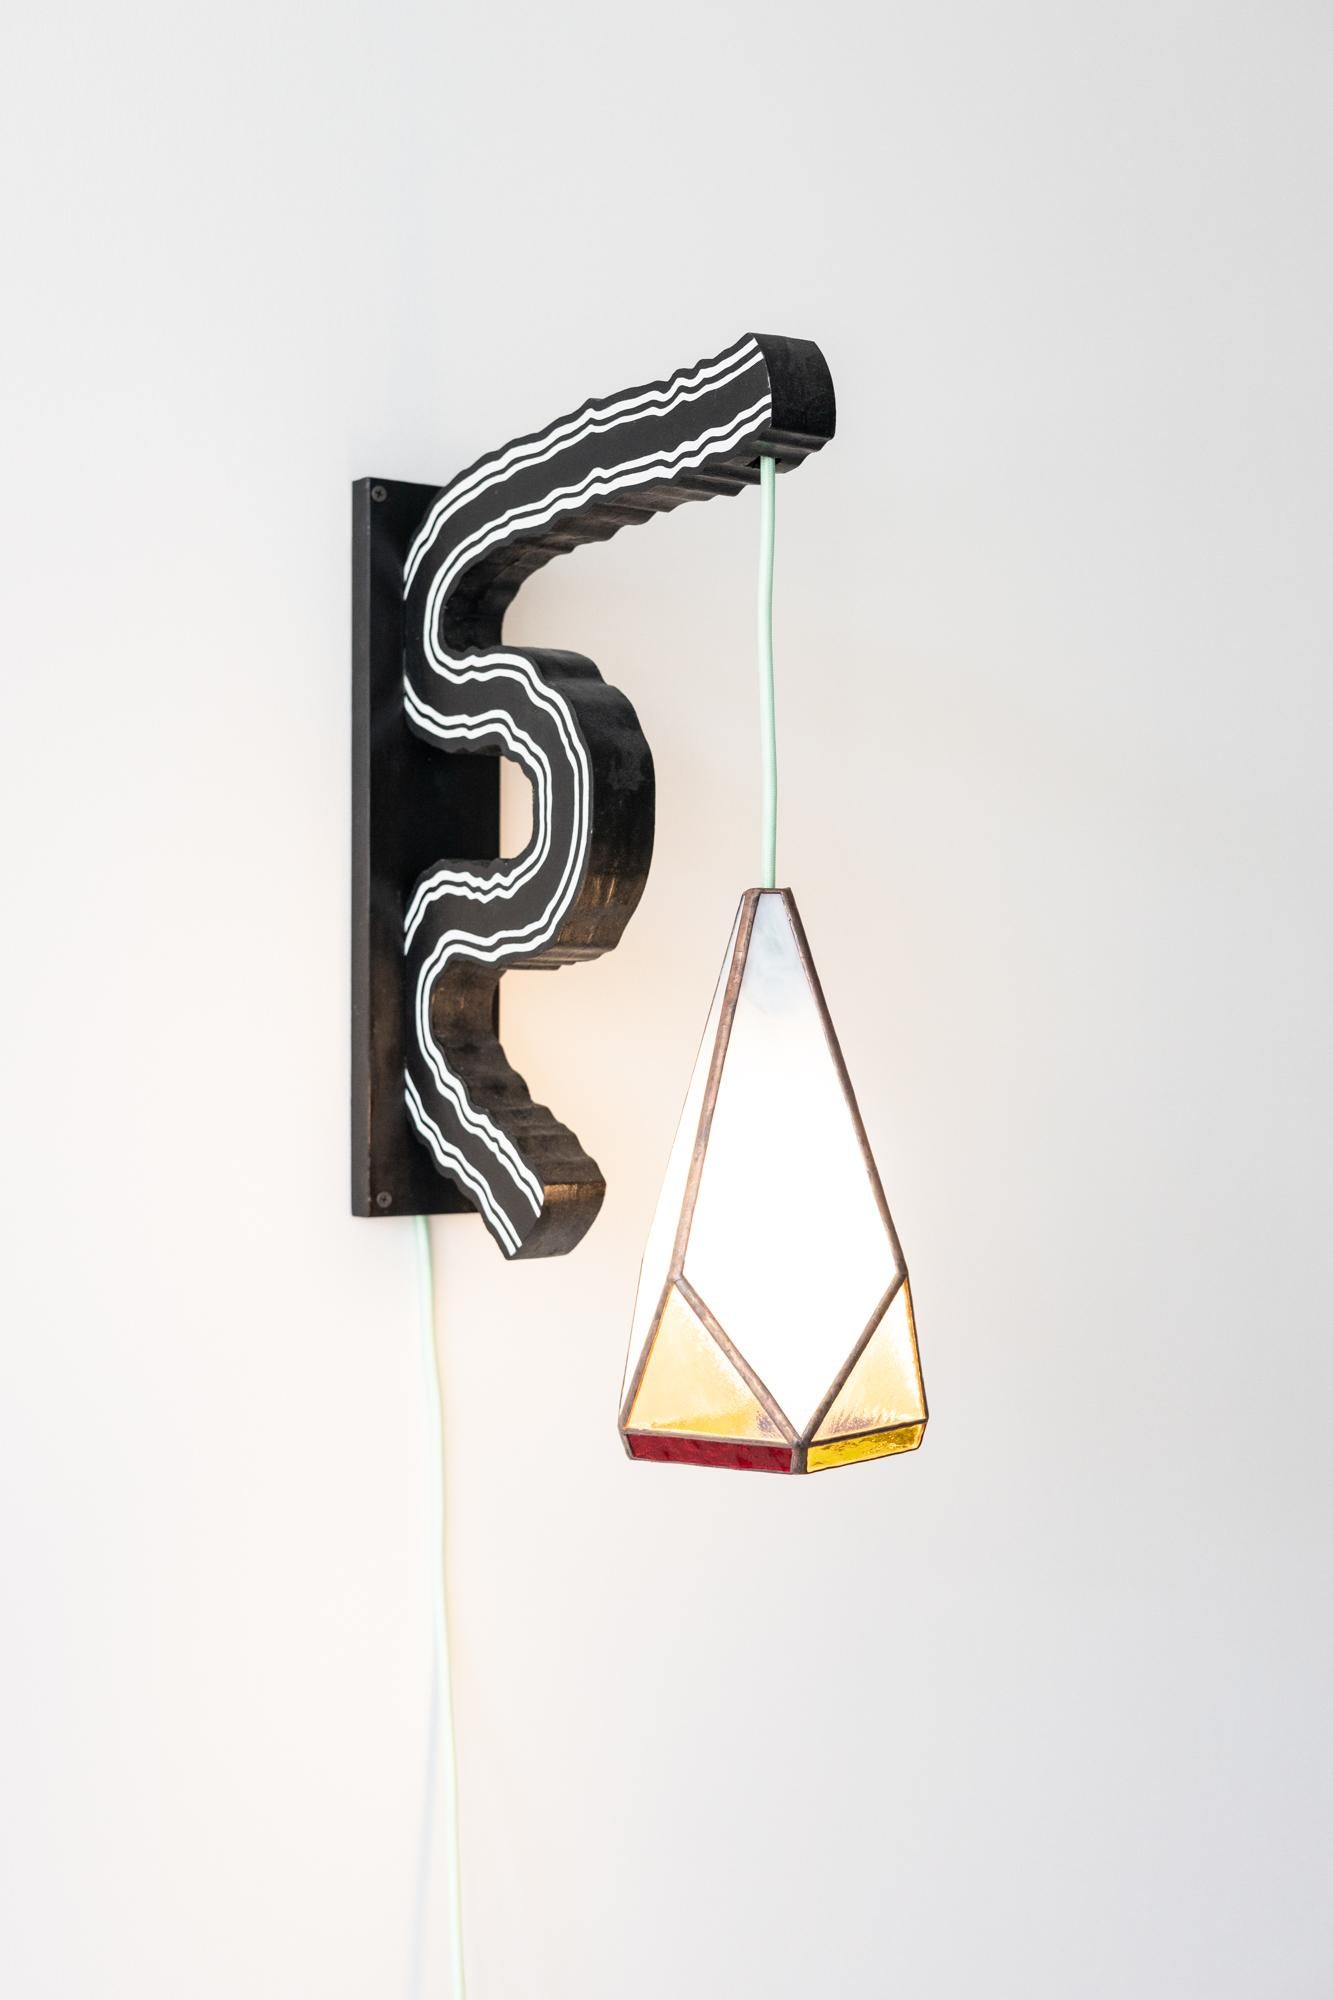 Lichtmast – Sculpture von Jason Andrew Turner